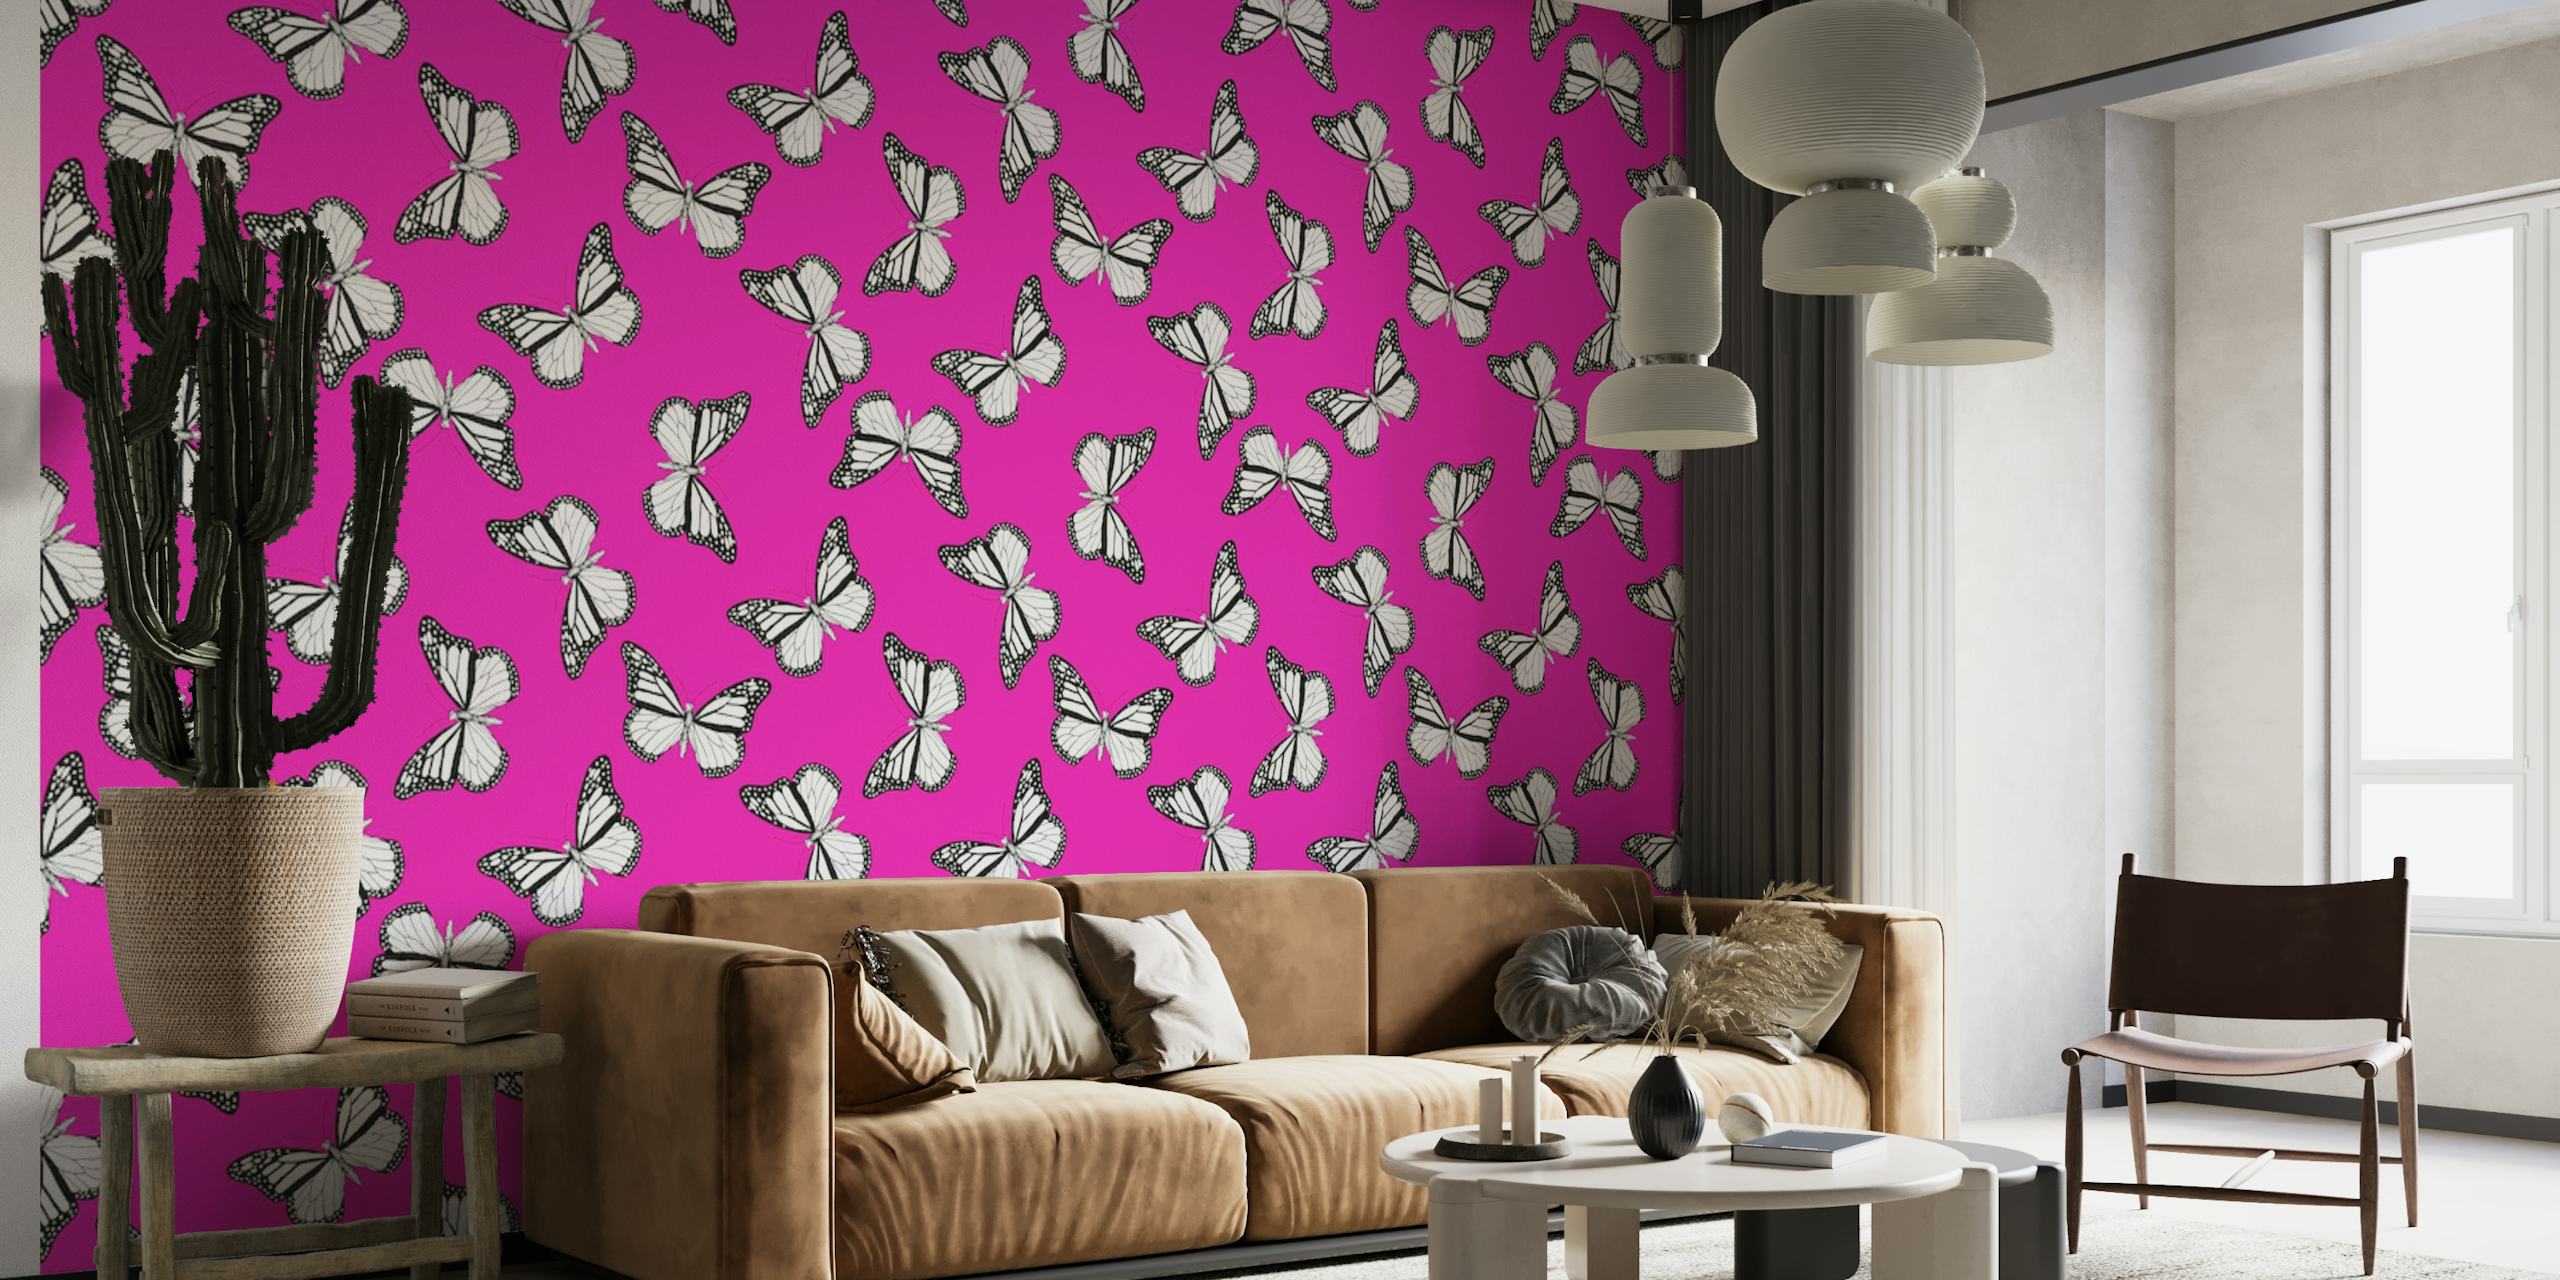 Wandbild „Monarchfalter“ auf happywall.com mit rosa Hintergrund